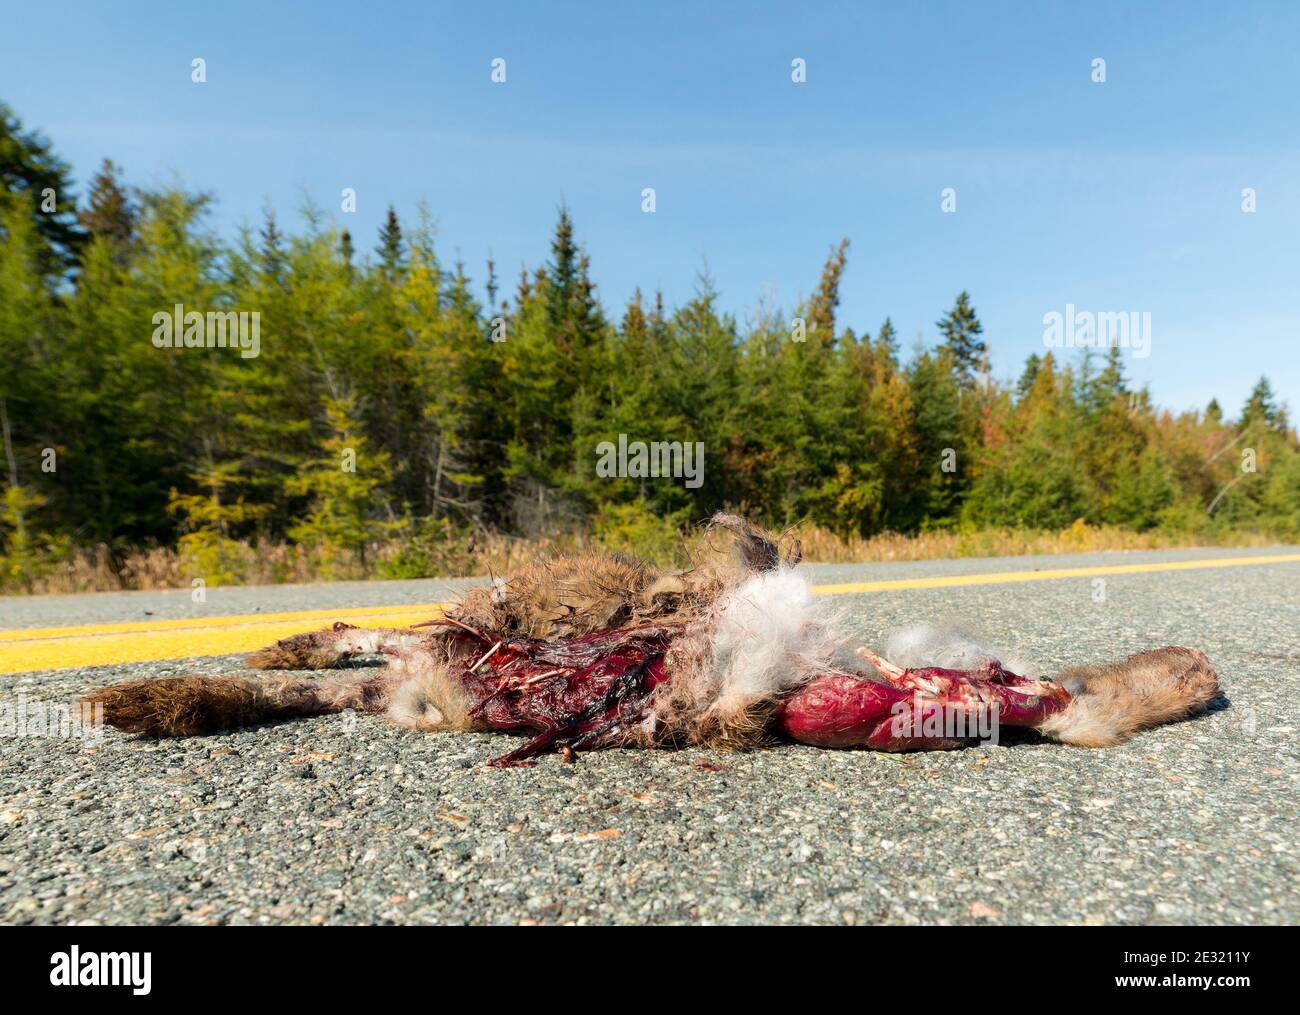 Coniglio morto nel mezzo di una strada. Le sue interiole sono visibili, le ossa rotte stanno attaccando fuori. Presenza di sangue coagulato. Spazio per il testo. Foto Stock